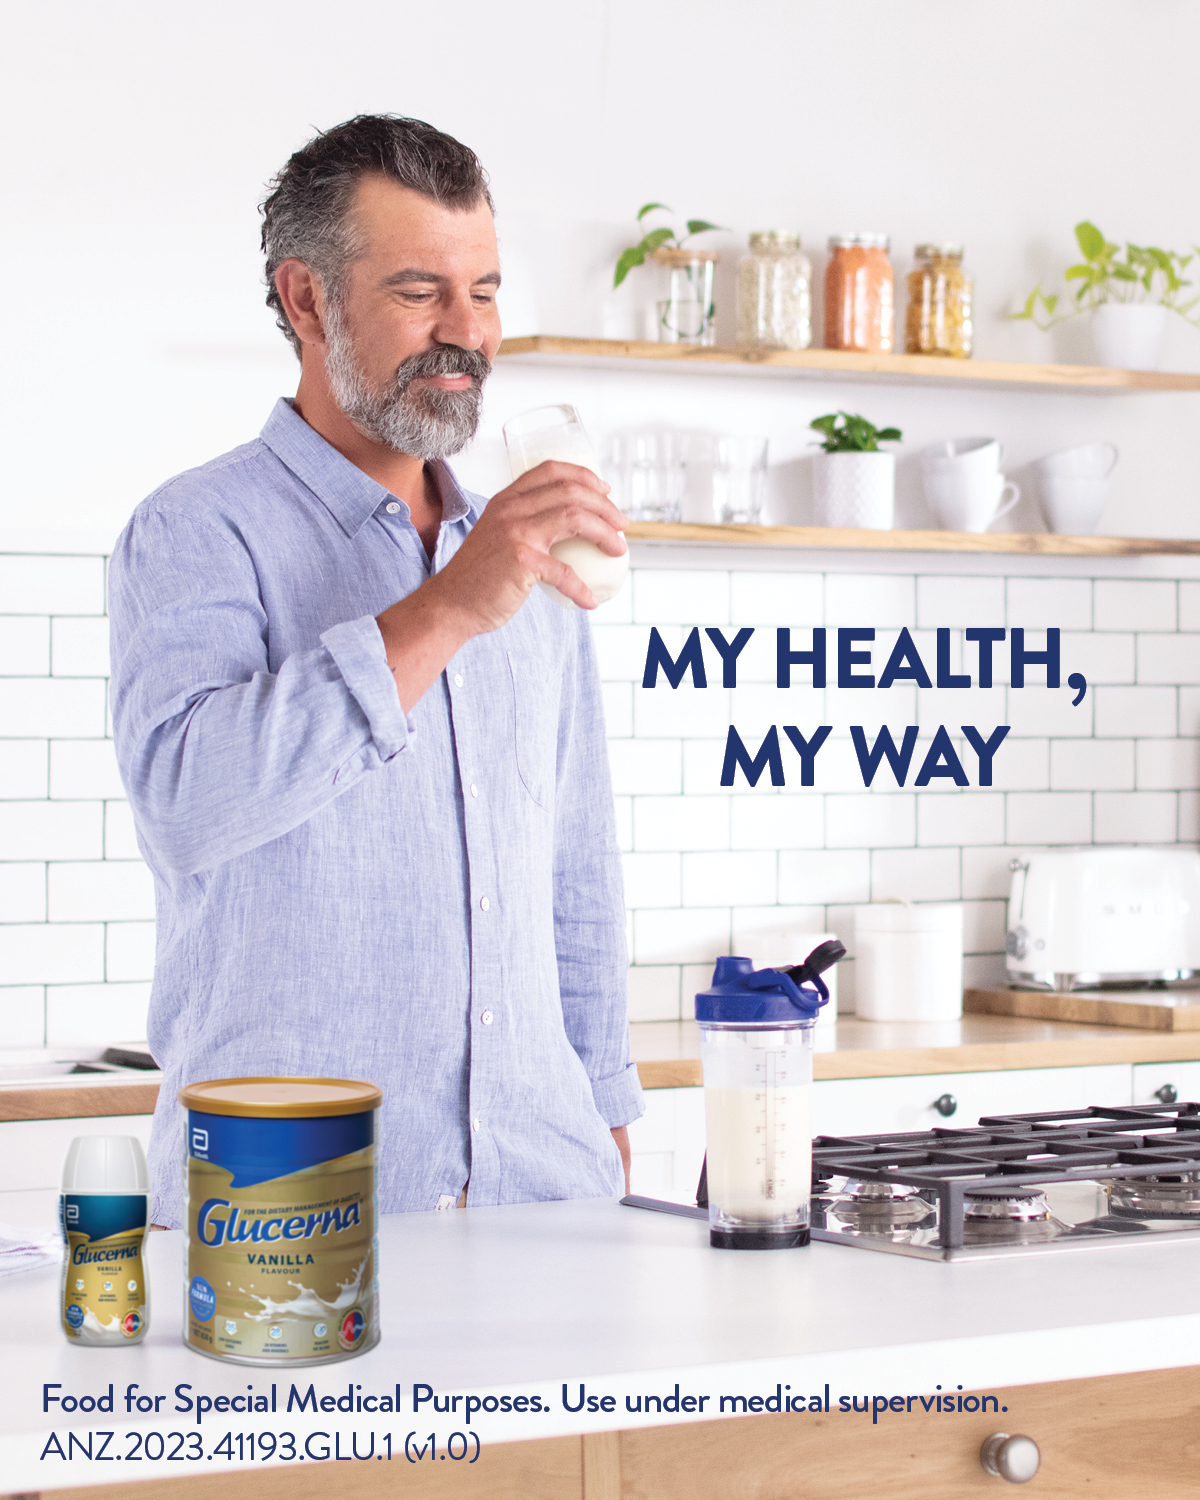 Sữa dành cho người tiểu đường Glucerna Úc Bổ sung dinh dưỡng, cân bằng đường huyết, tạo sức khỏe tim, tiêu hóa, tăng sức khỏe chung - OZ Slim Store